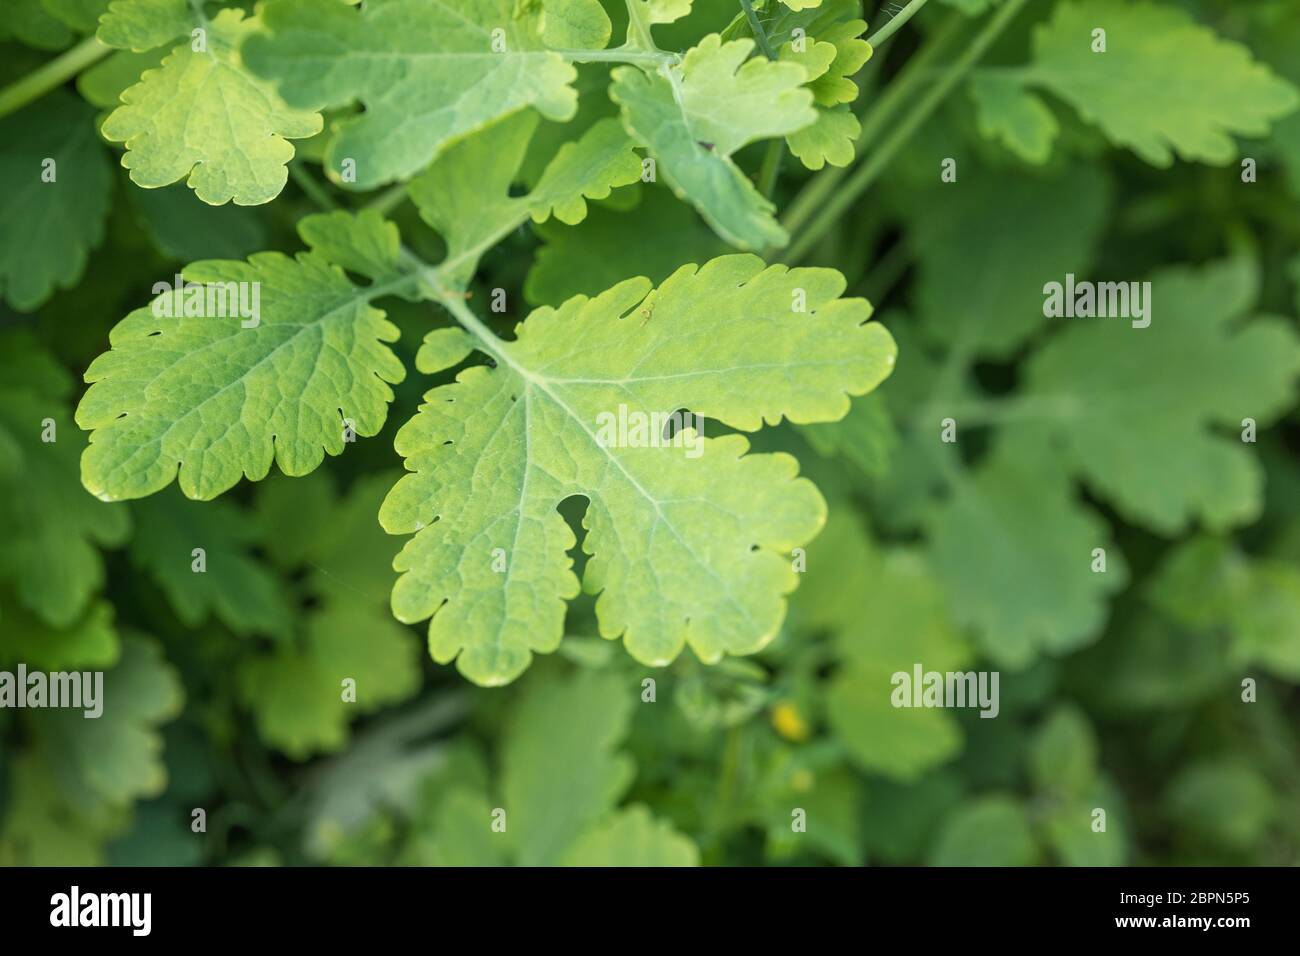 Nahaufnahme der Blätter des Großkelandins / Chelidonium majus im Schatten, und zeigt deutliche Blattrand. Ehemalige Heilpflanze mit lebhaftem gelben saft. Stockfoto